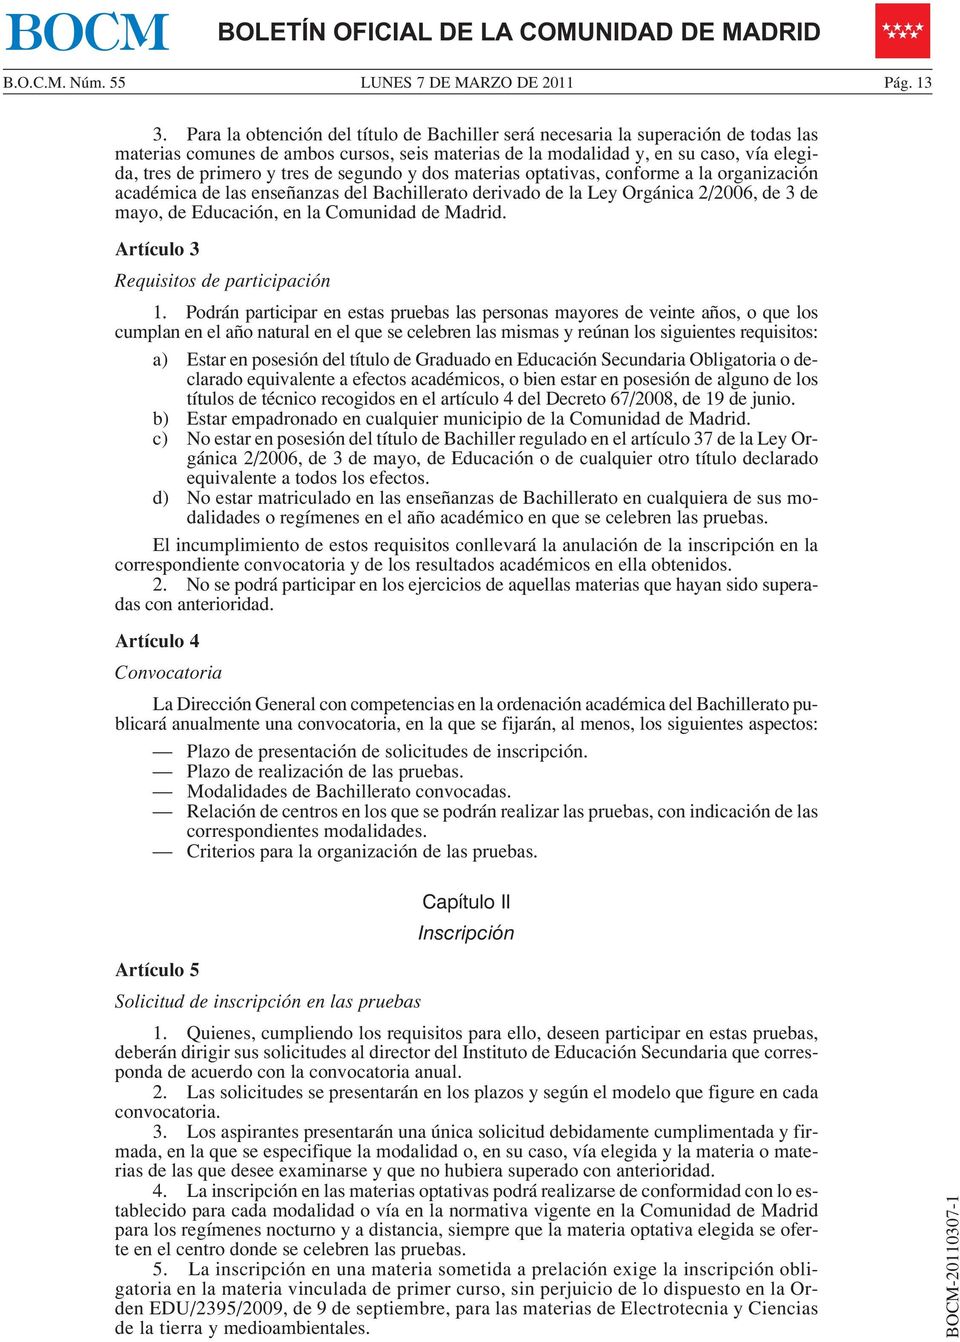 de segundo y dos materias optativas, conforme a la organización académica de las enseñanzas del Bachillerato derivado de la Ley Orgánica 2/2006, de 3 de mayo, de Educación, en la Comunidad de Madrid.